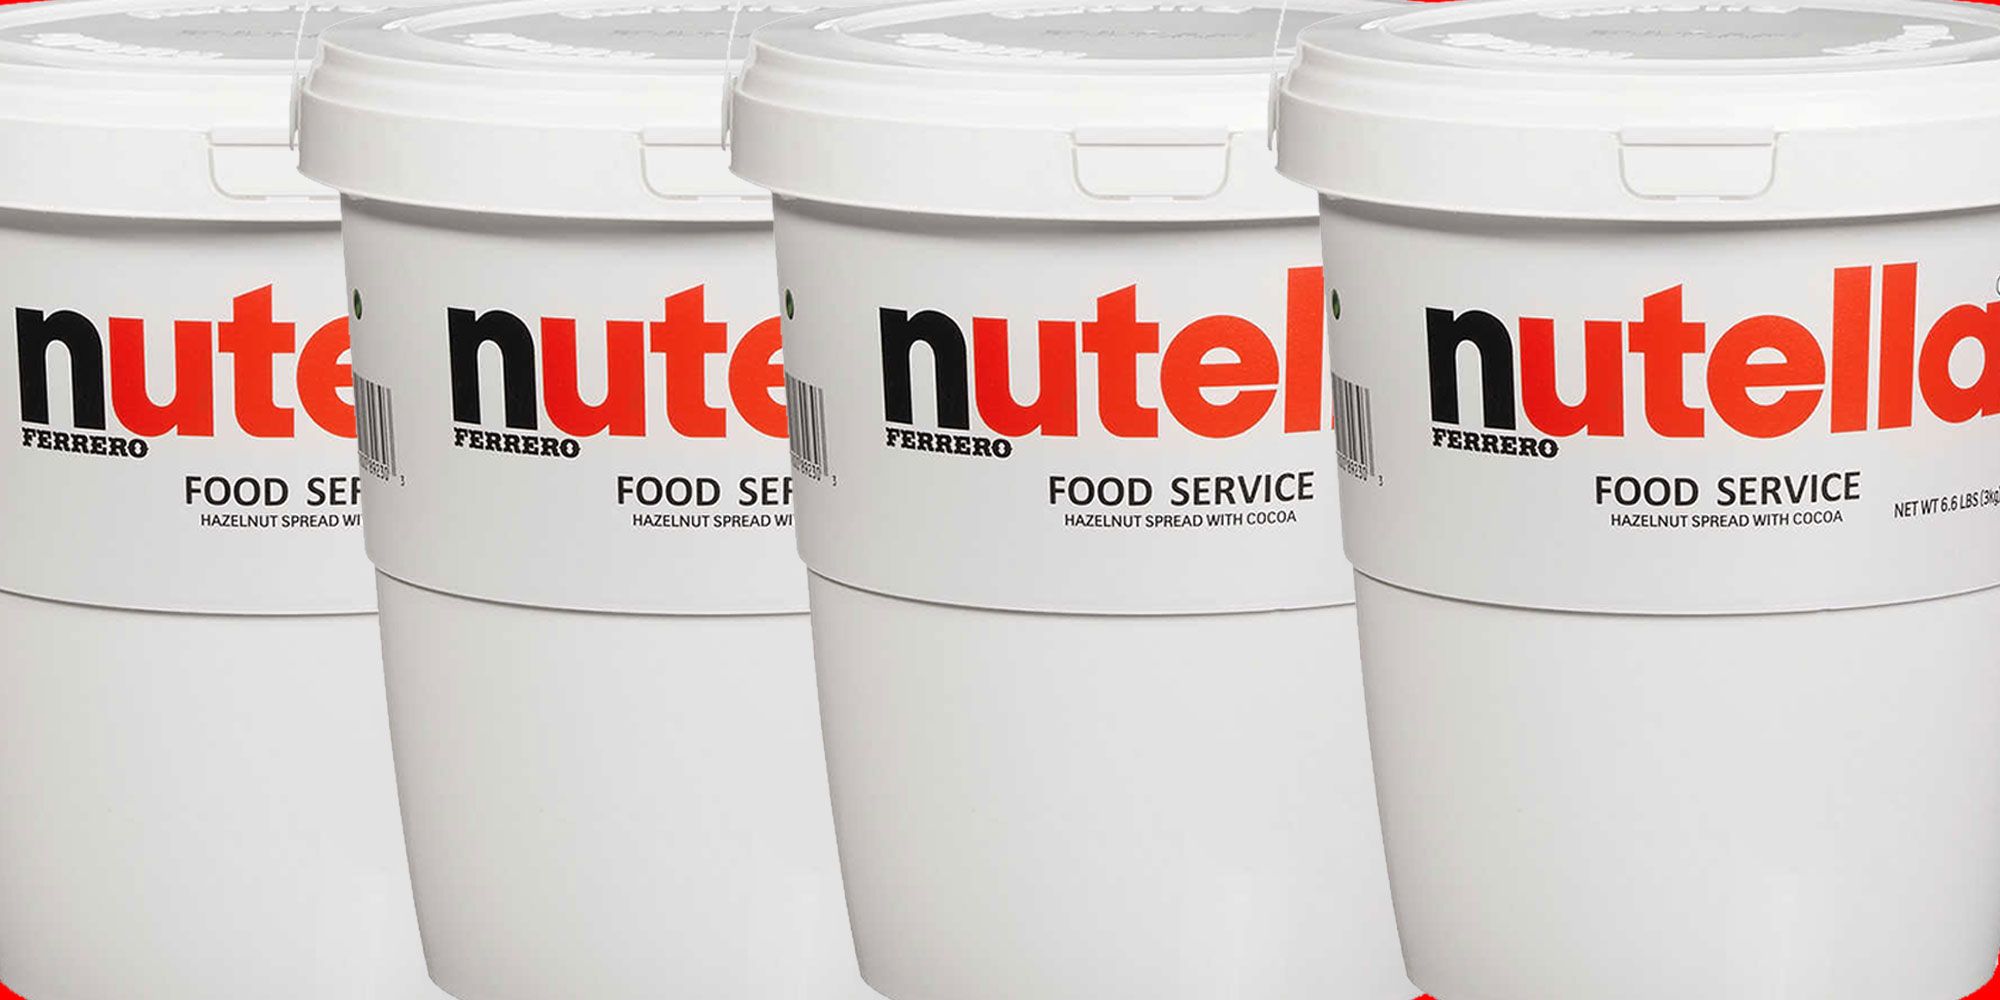 Nutella 3 kg (6.6 lb) Tub